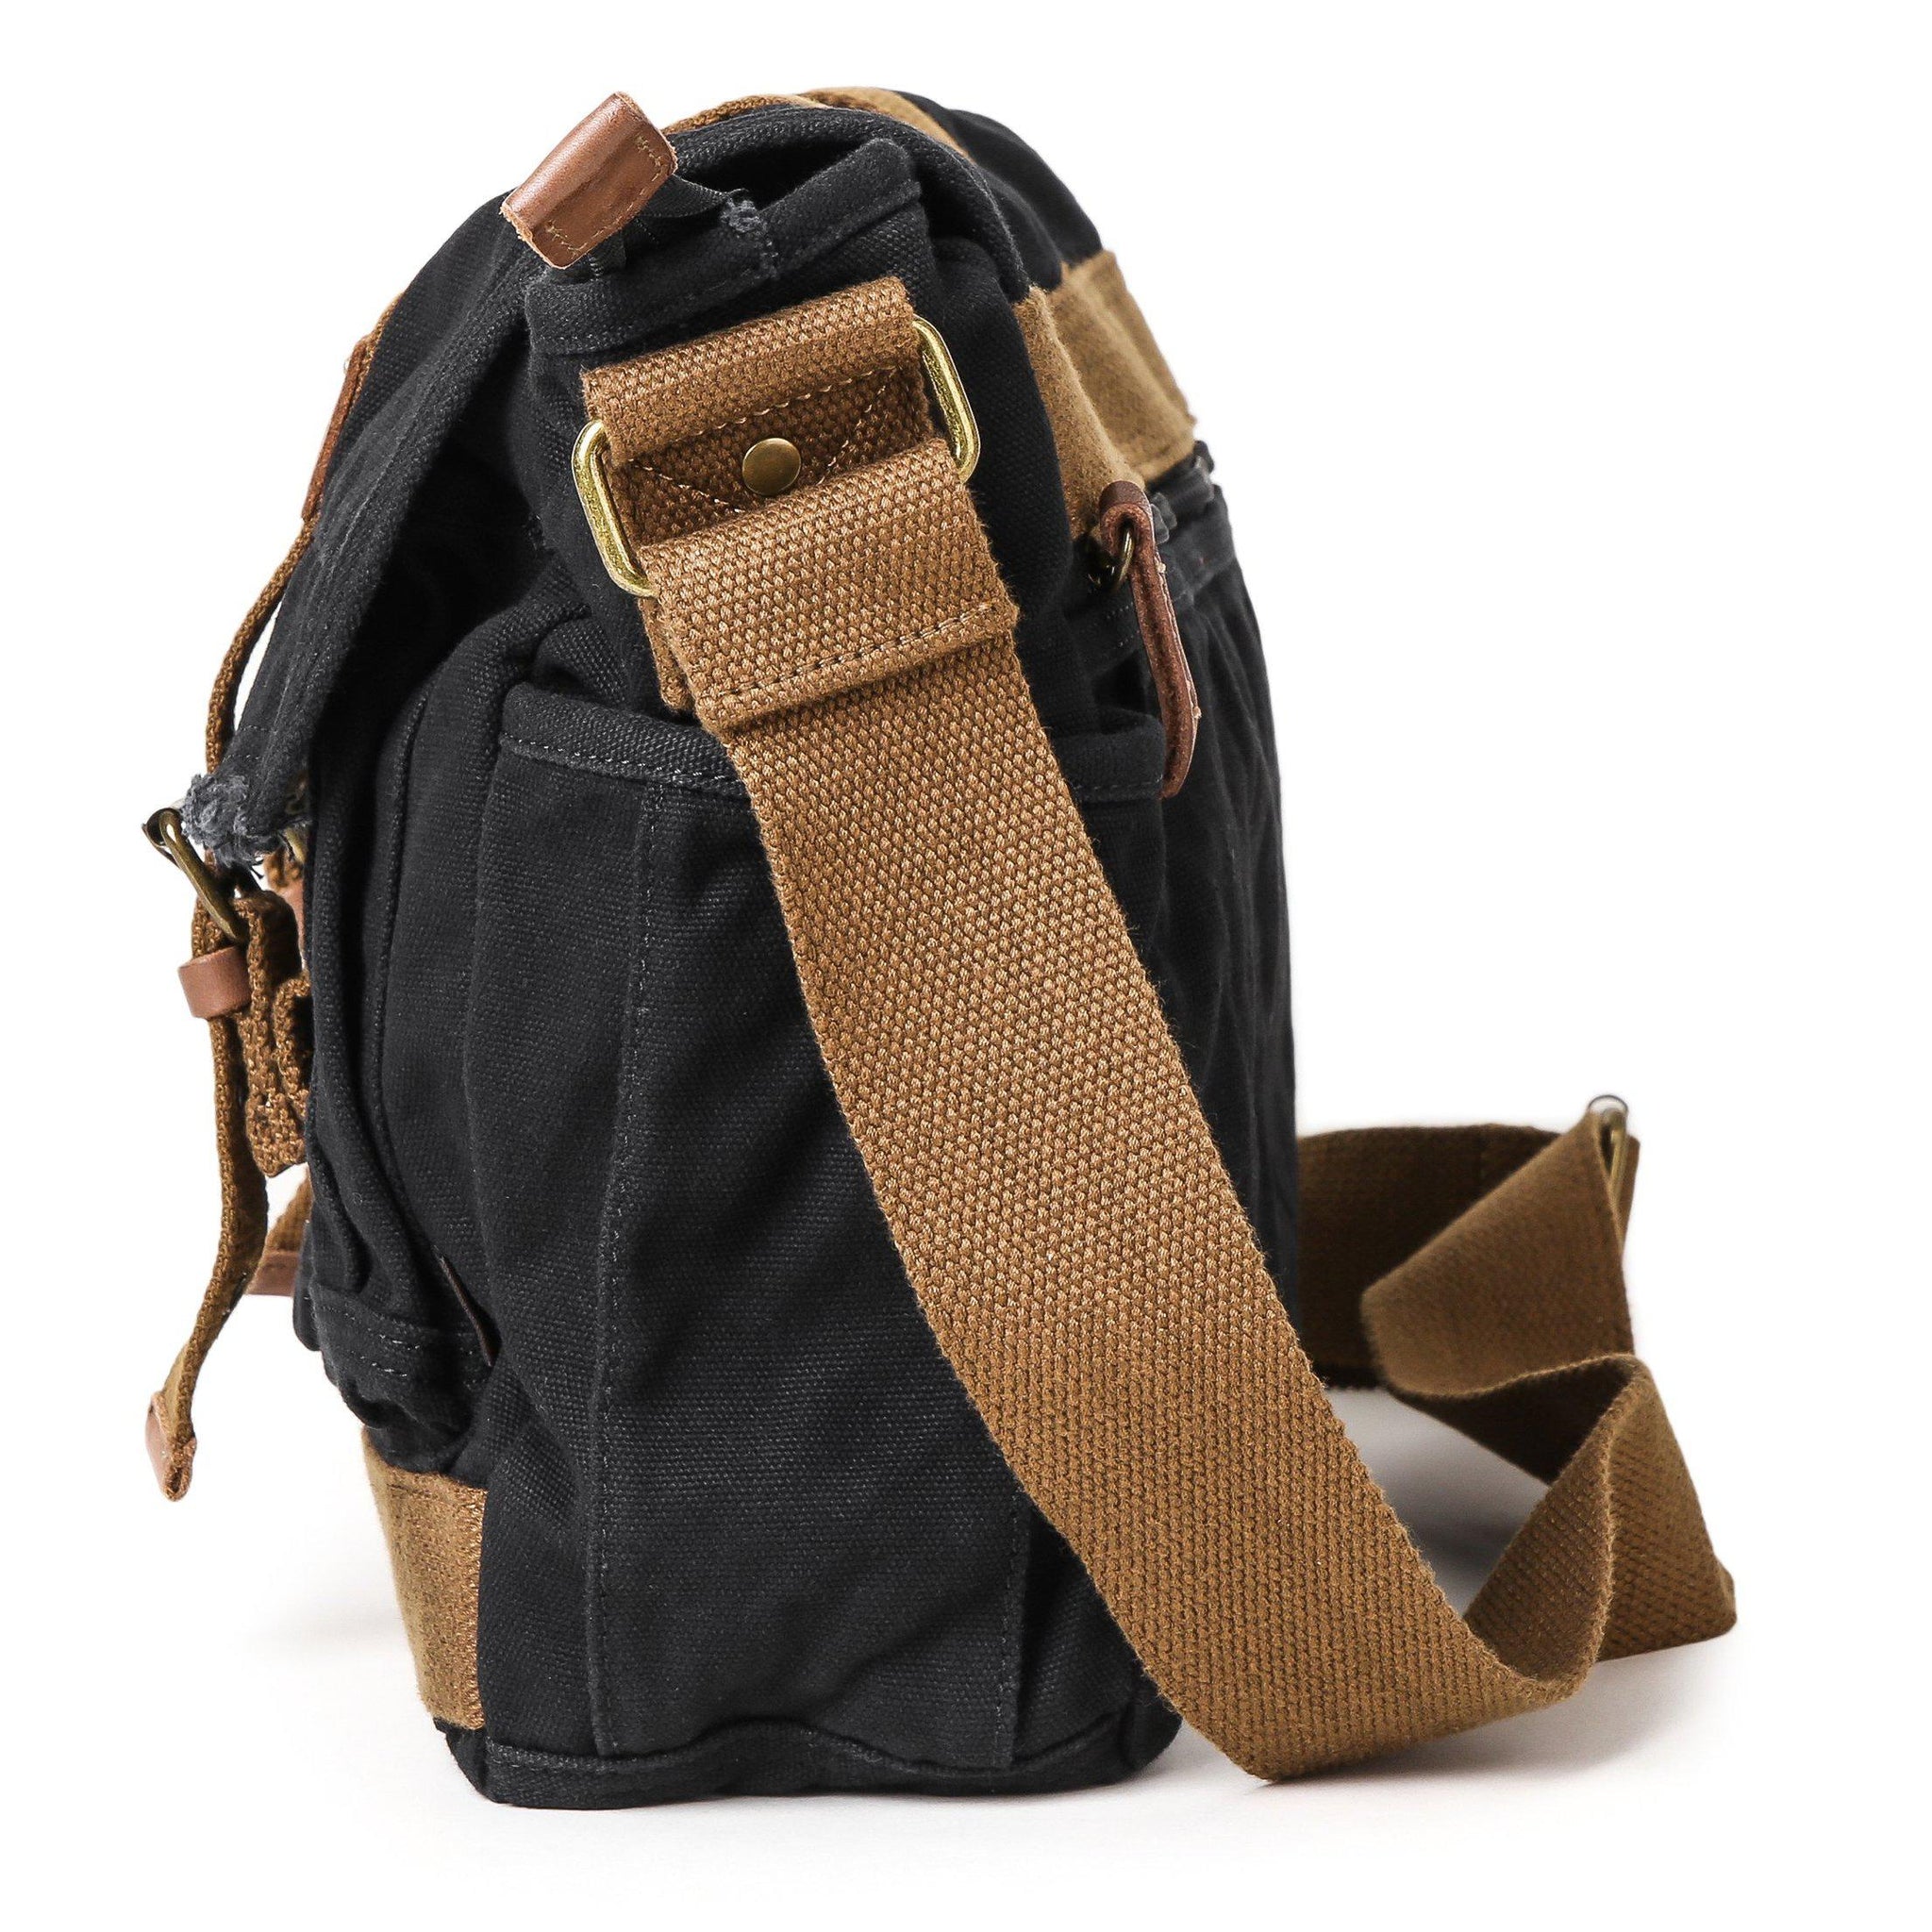 Gootium Canvas Messenger Bag - Vintage Shoulder Bag Frayed Style Boho Purse